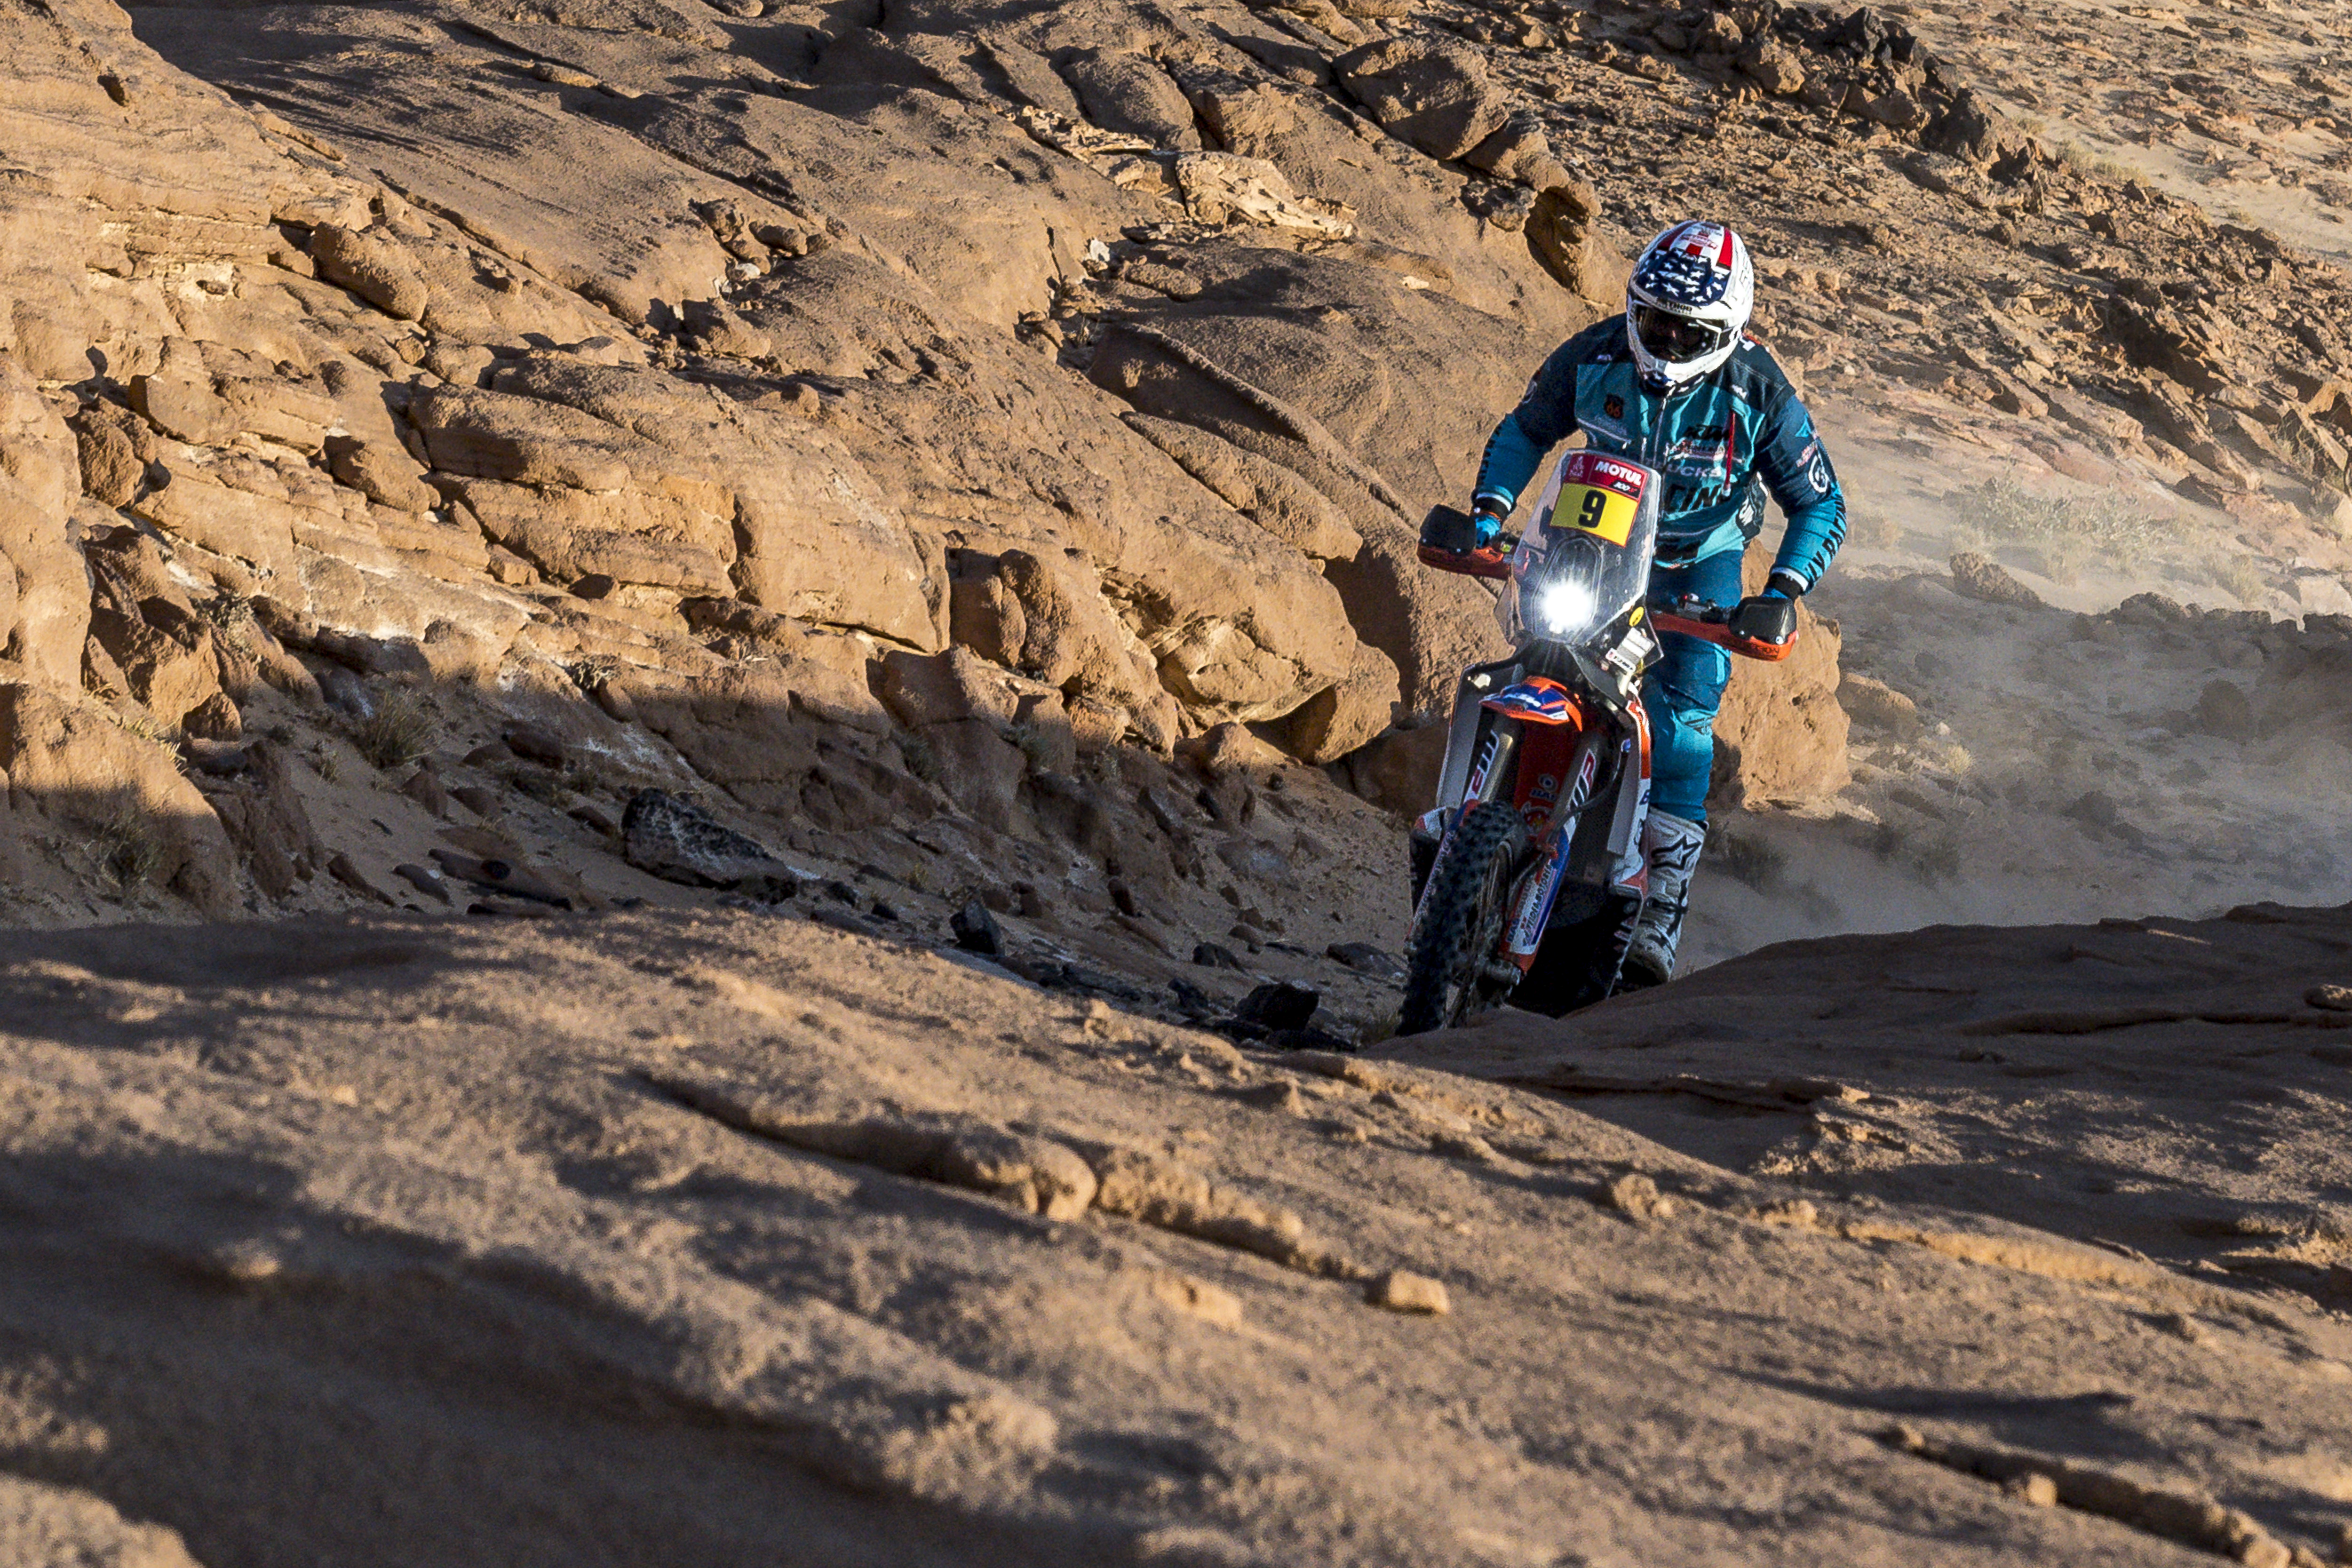 Dakar Rally a dangerous adventure for St. George dirt biker